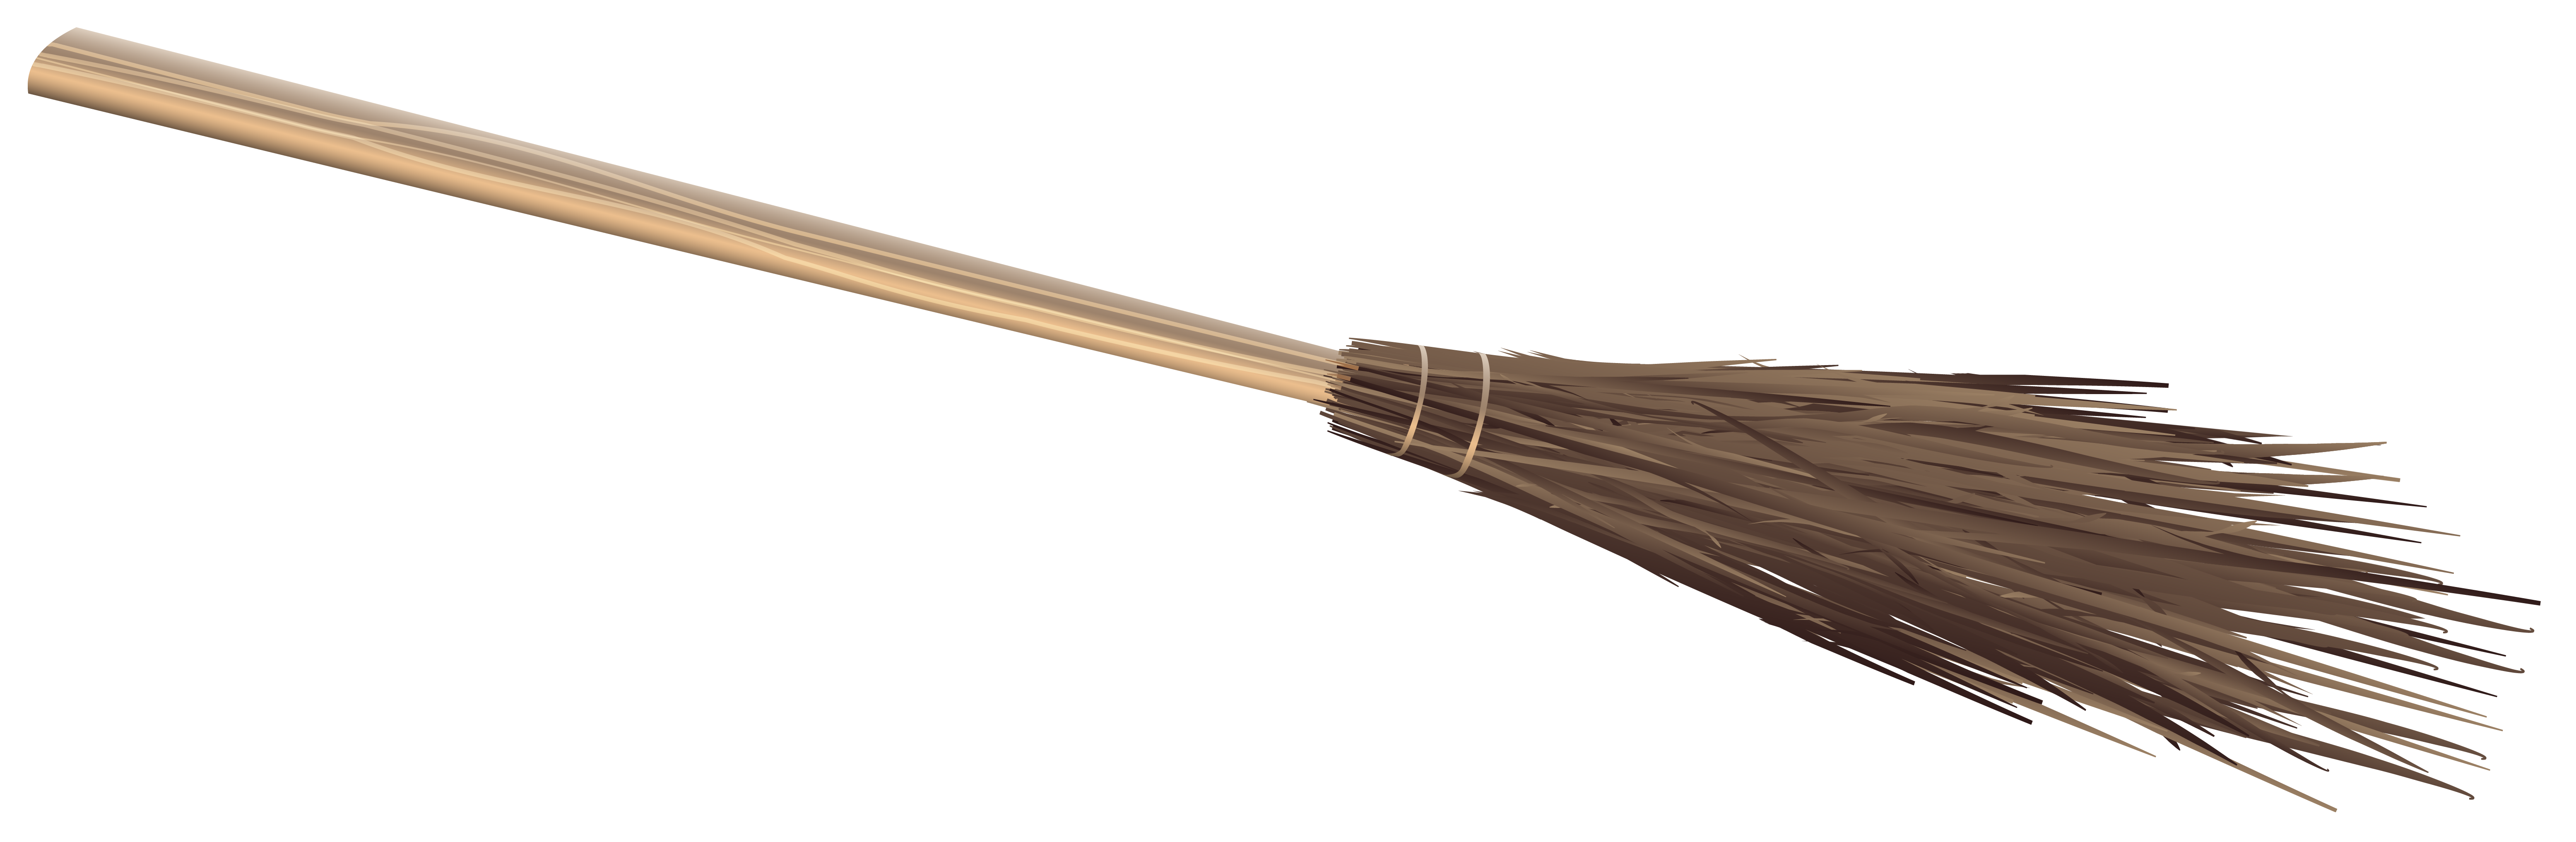 Hard Broom Stick